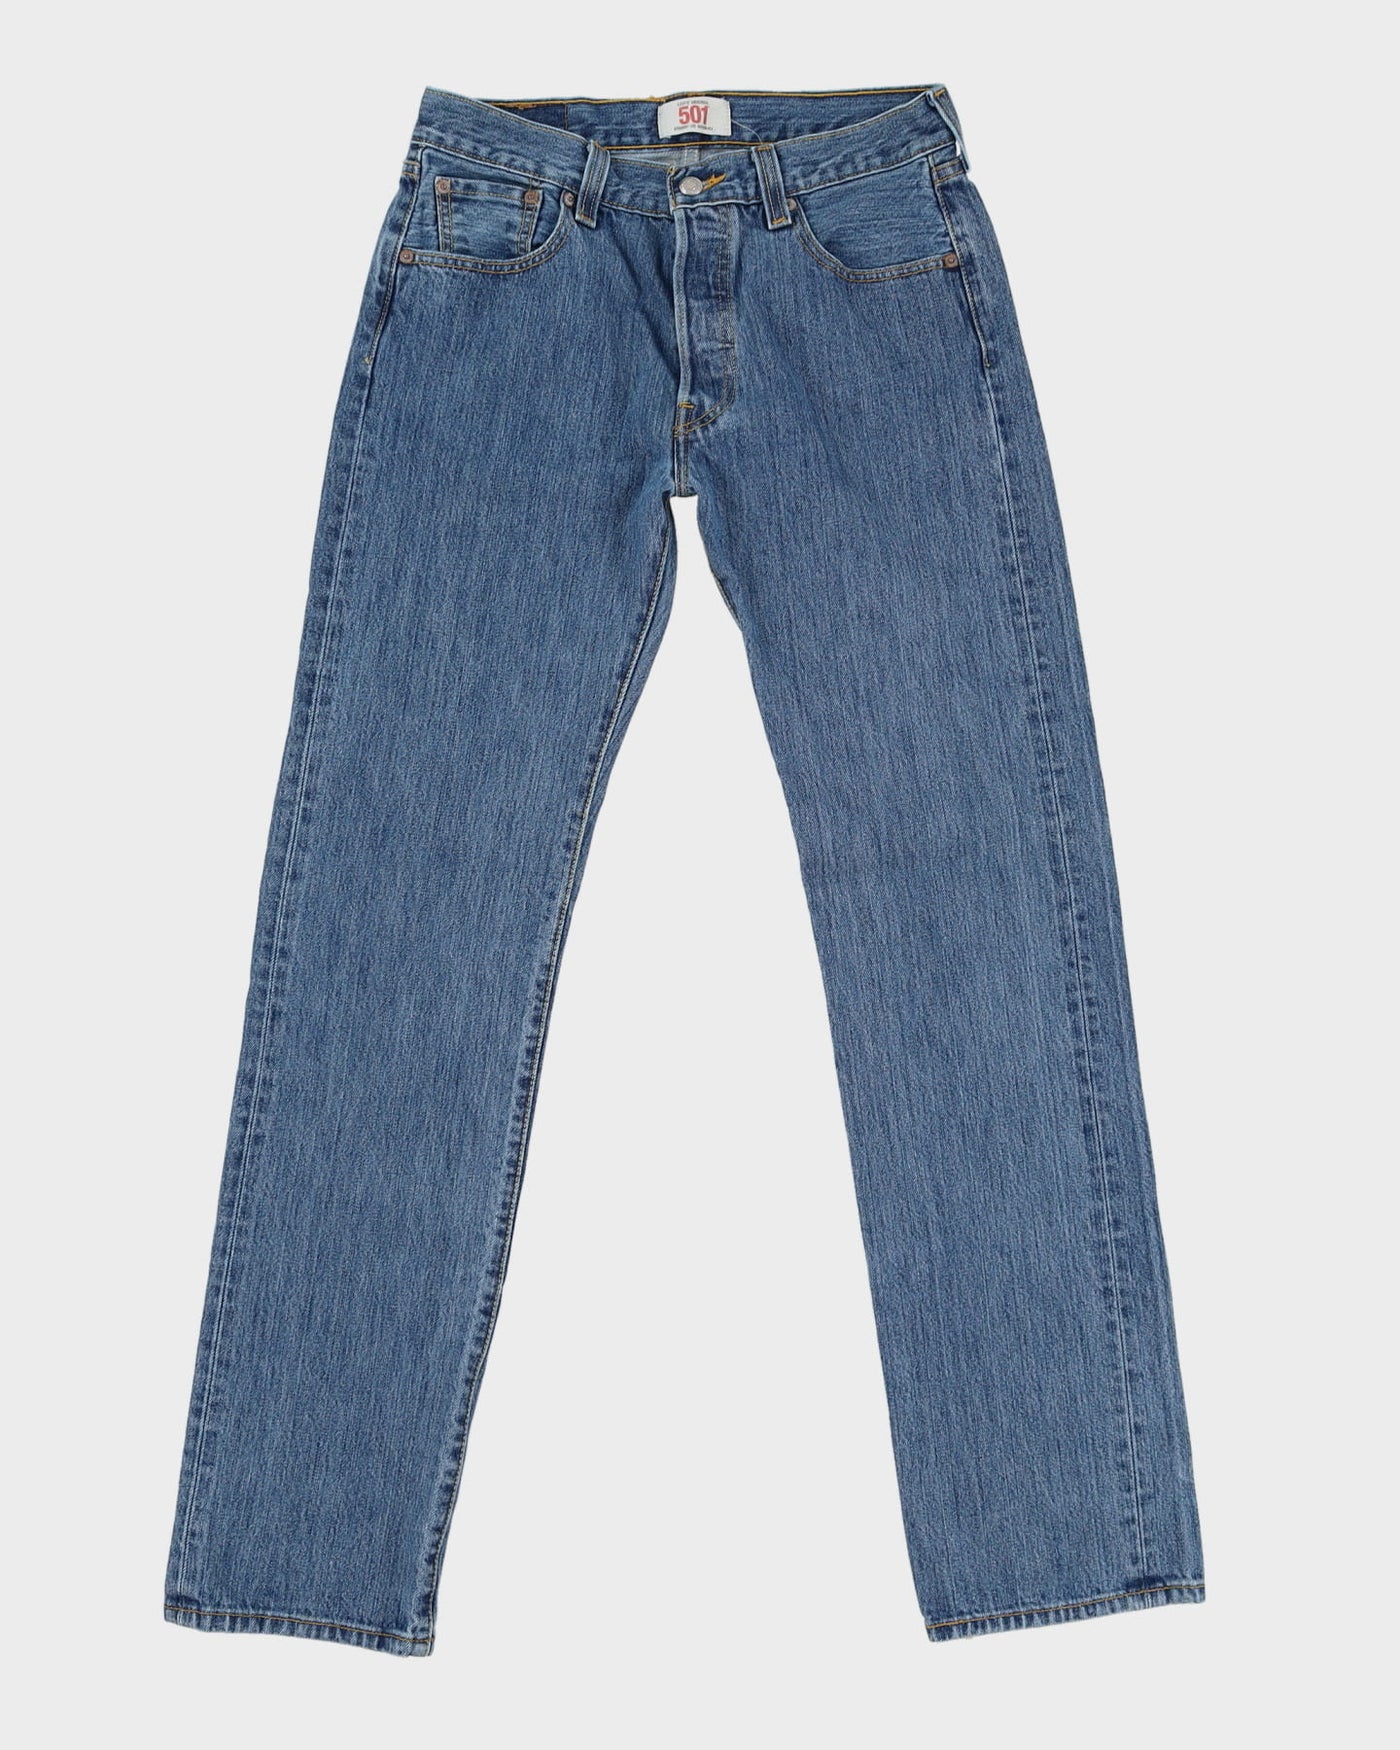 Levi's 501 Blue Jeans - W30 L33